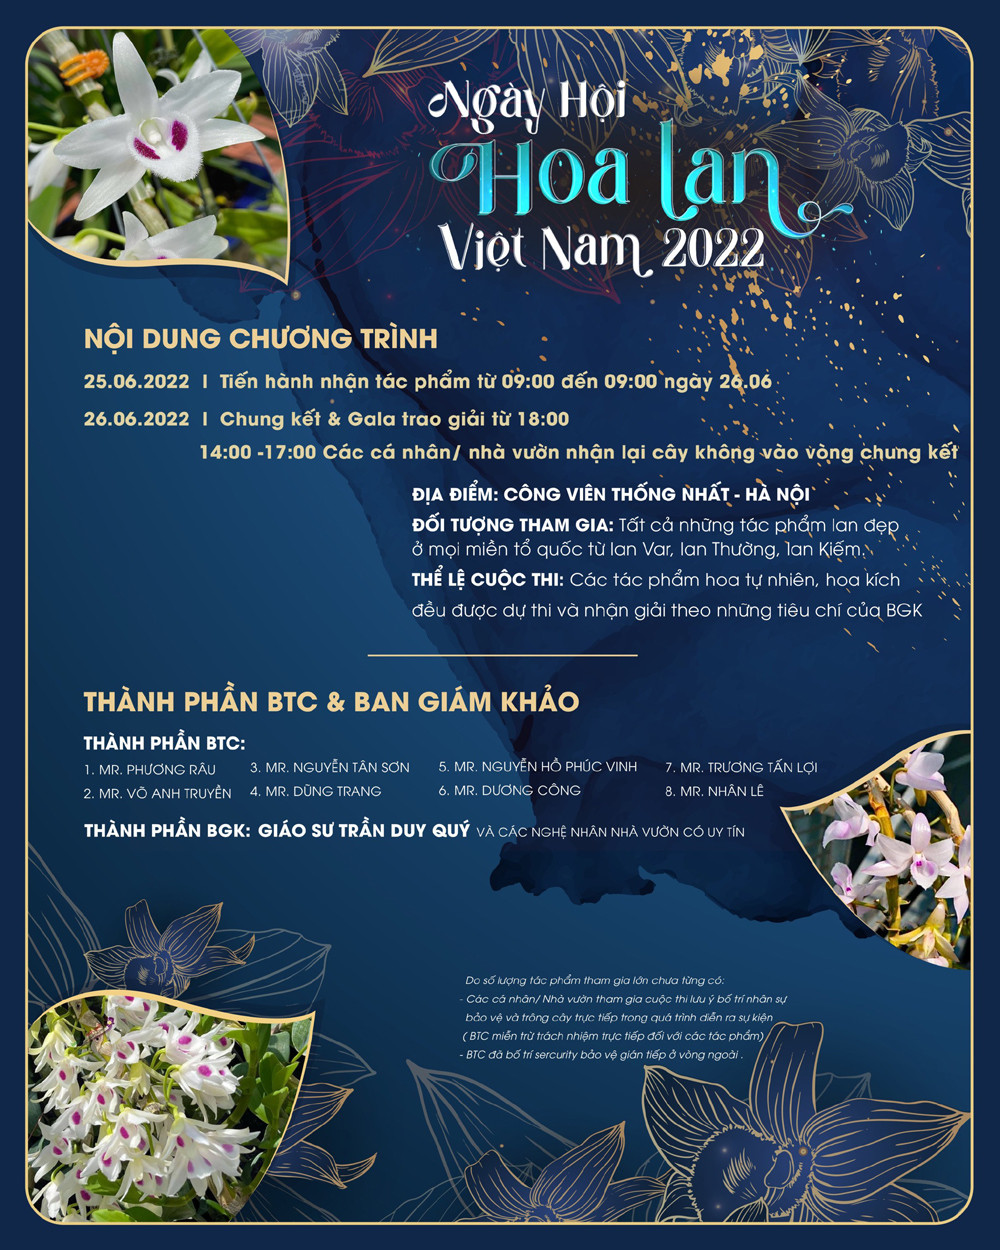 Hoa lan Hà Nội luôn là biểu tượng của sự tinh tế và thanh lịch. Chúng tôi tự hào cung cấp cho quý khách những loại hoa lan đẹp nhất và chất lượng nhất, từ những loại lan quý hiếm đến những loại lan thông thường phổ biến.